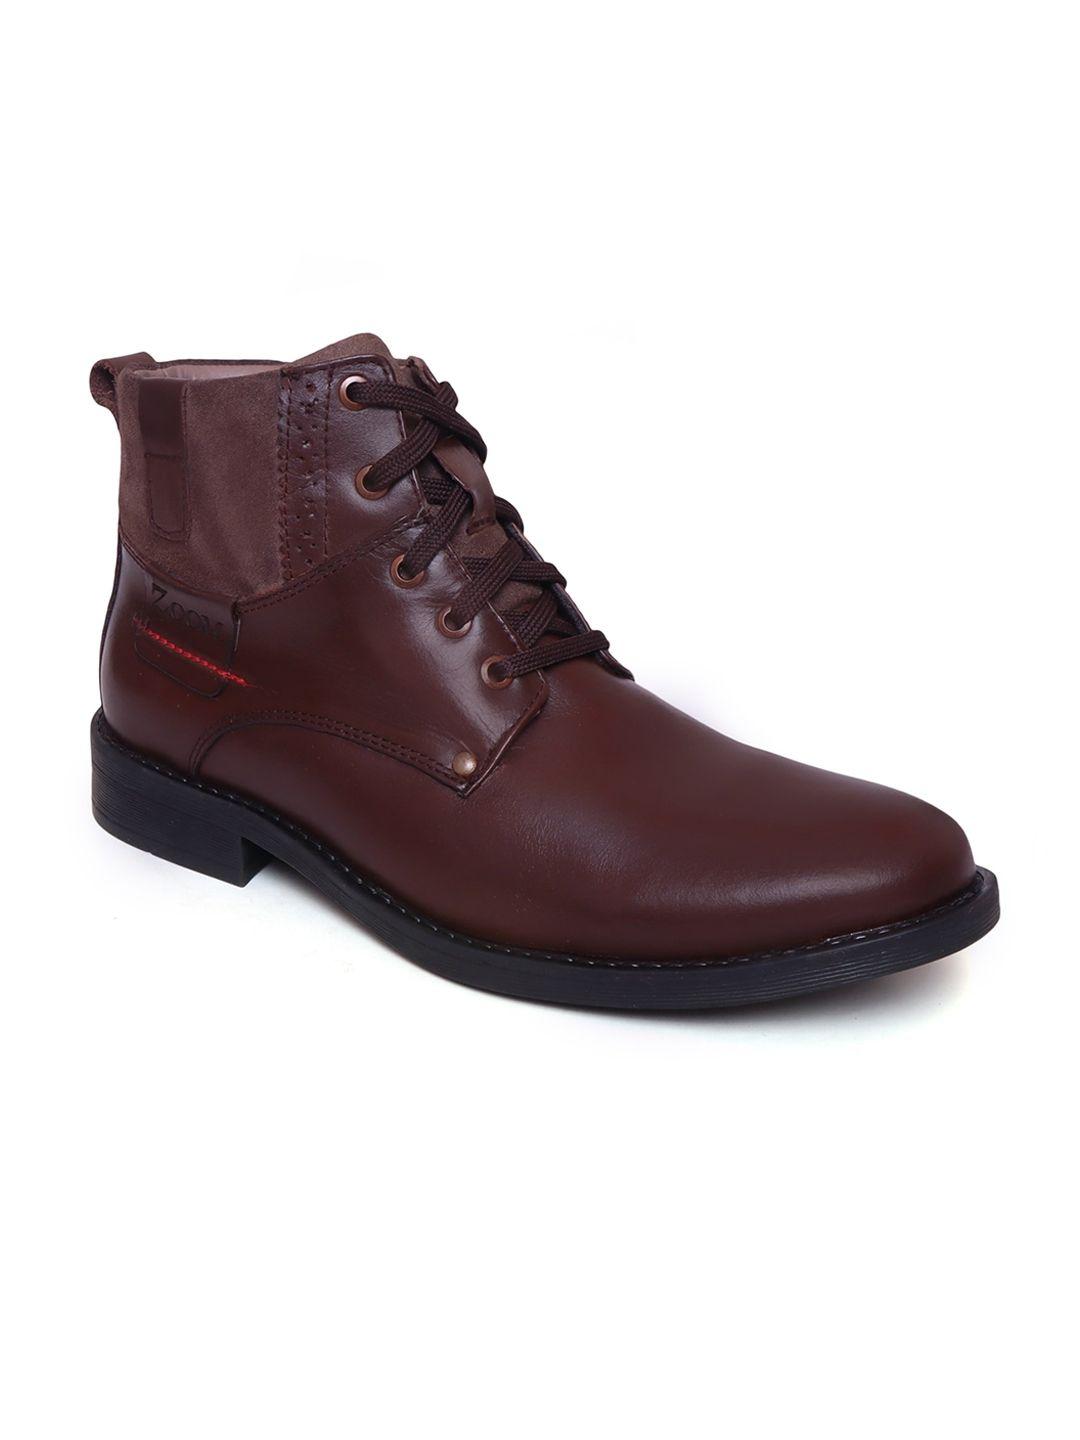 zoom shoes men mid top textured leather block heel regular boots